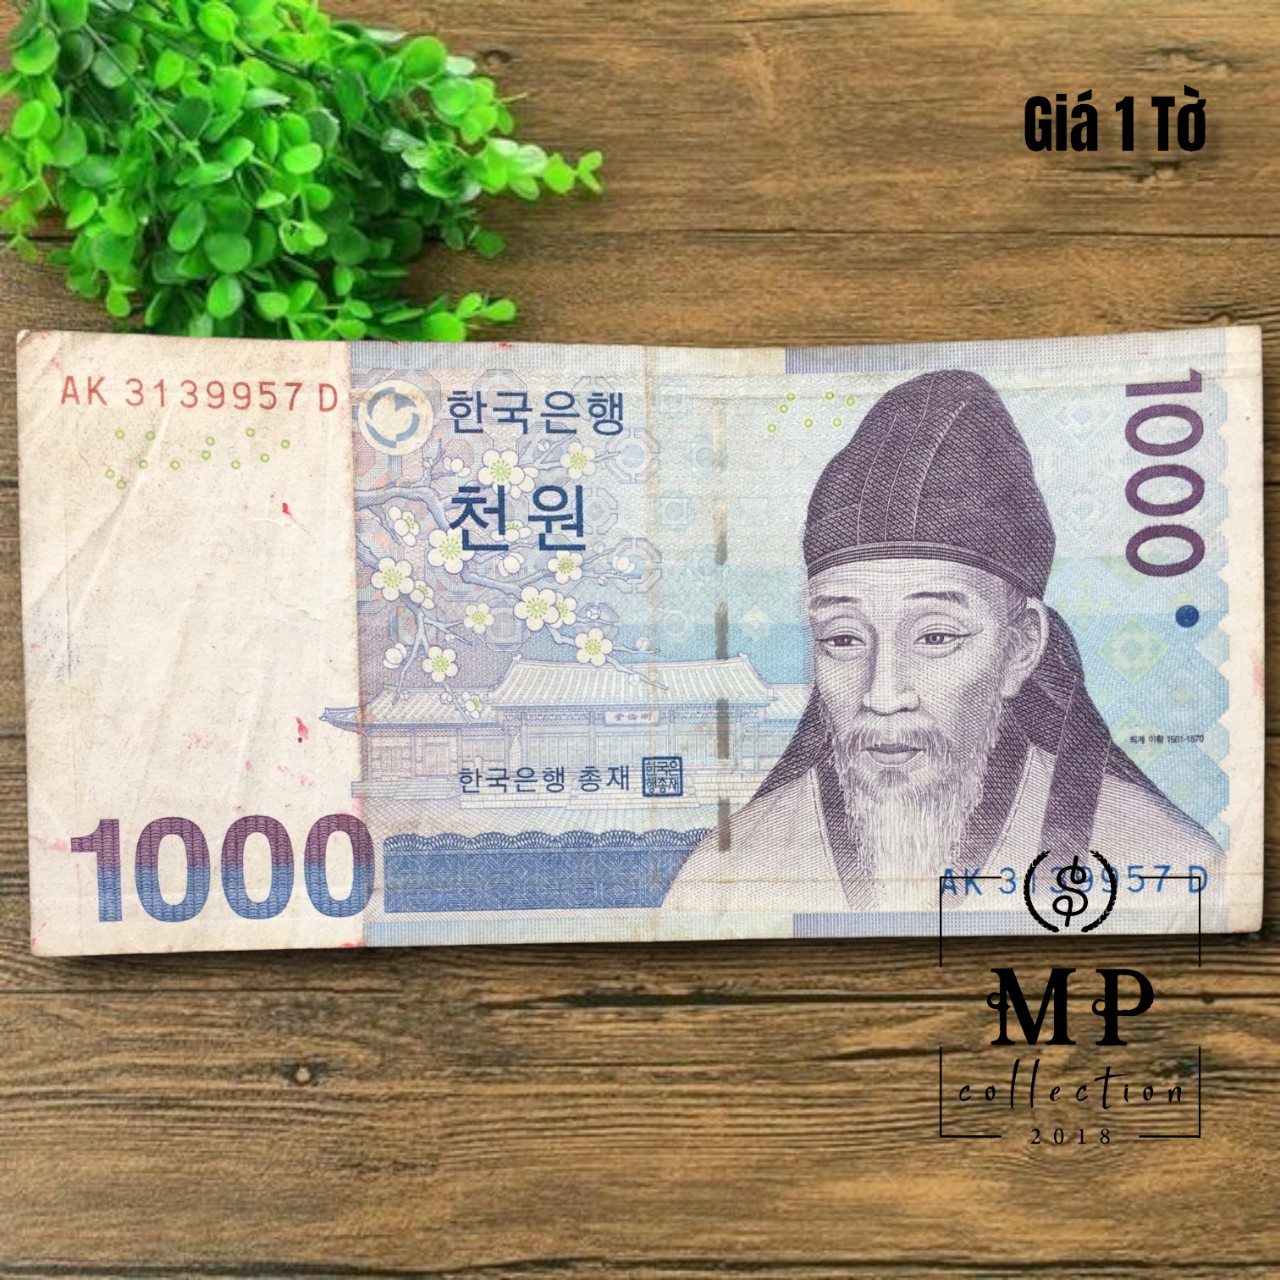 Tờ tiền Hàn Quốc mệnh giá 1000 won cũ - Tặng túi nilon bảo quản